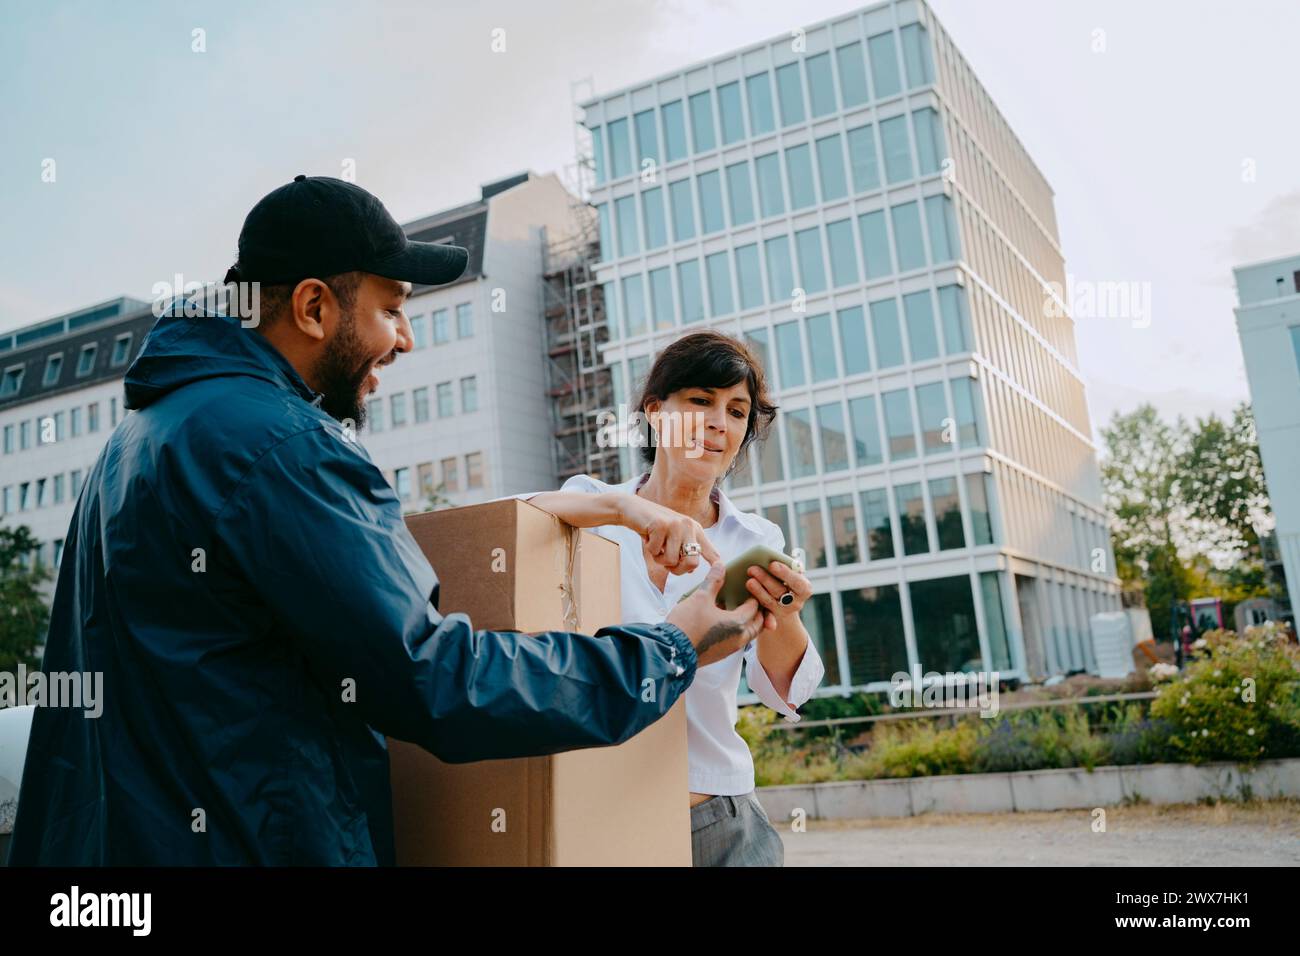 Reife Frau, die digitale Signatur macht, während sie das Paket von einer männlichen Zustellperson vor dem Gebäude erhält Stockfoto